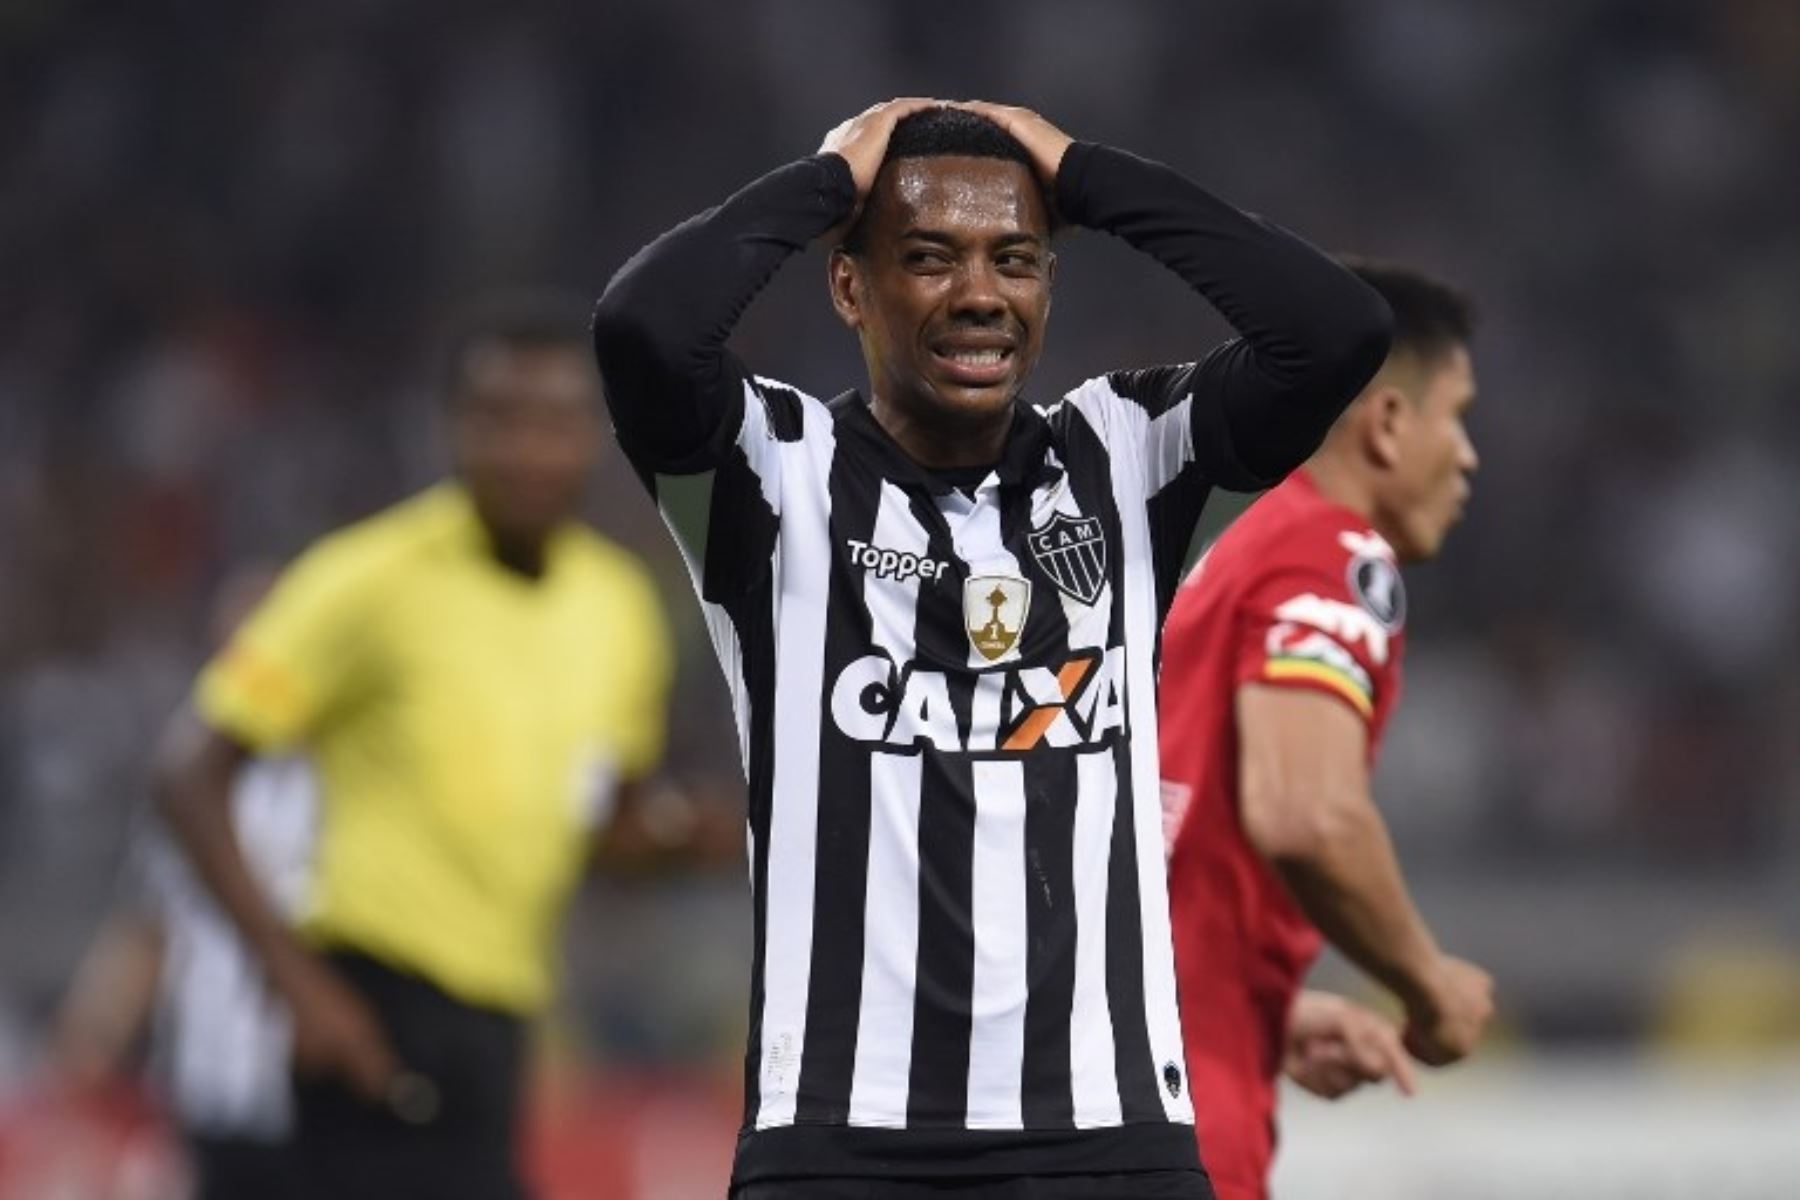 Robinho no puede creer que el Wiltermann  dejó afuera  al Mineiro